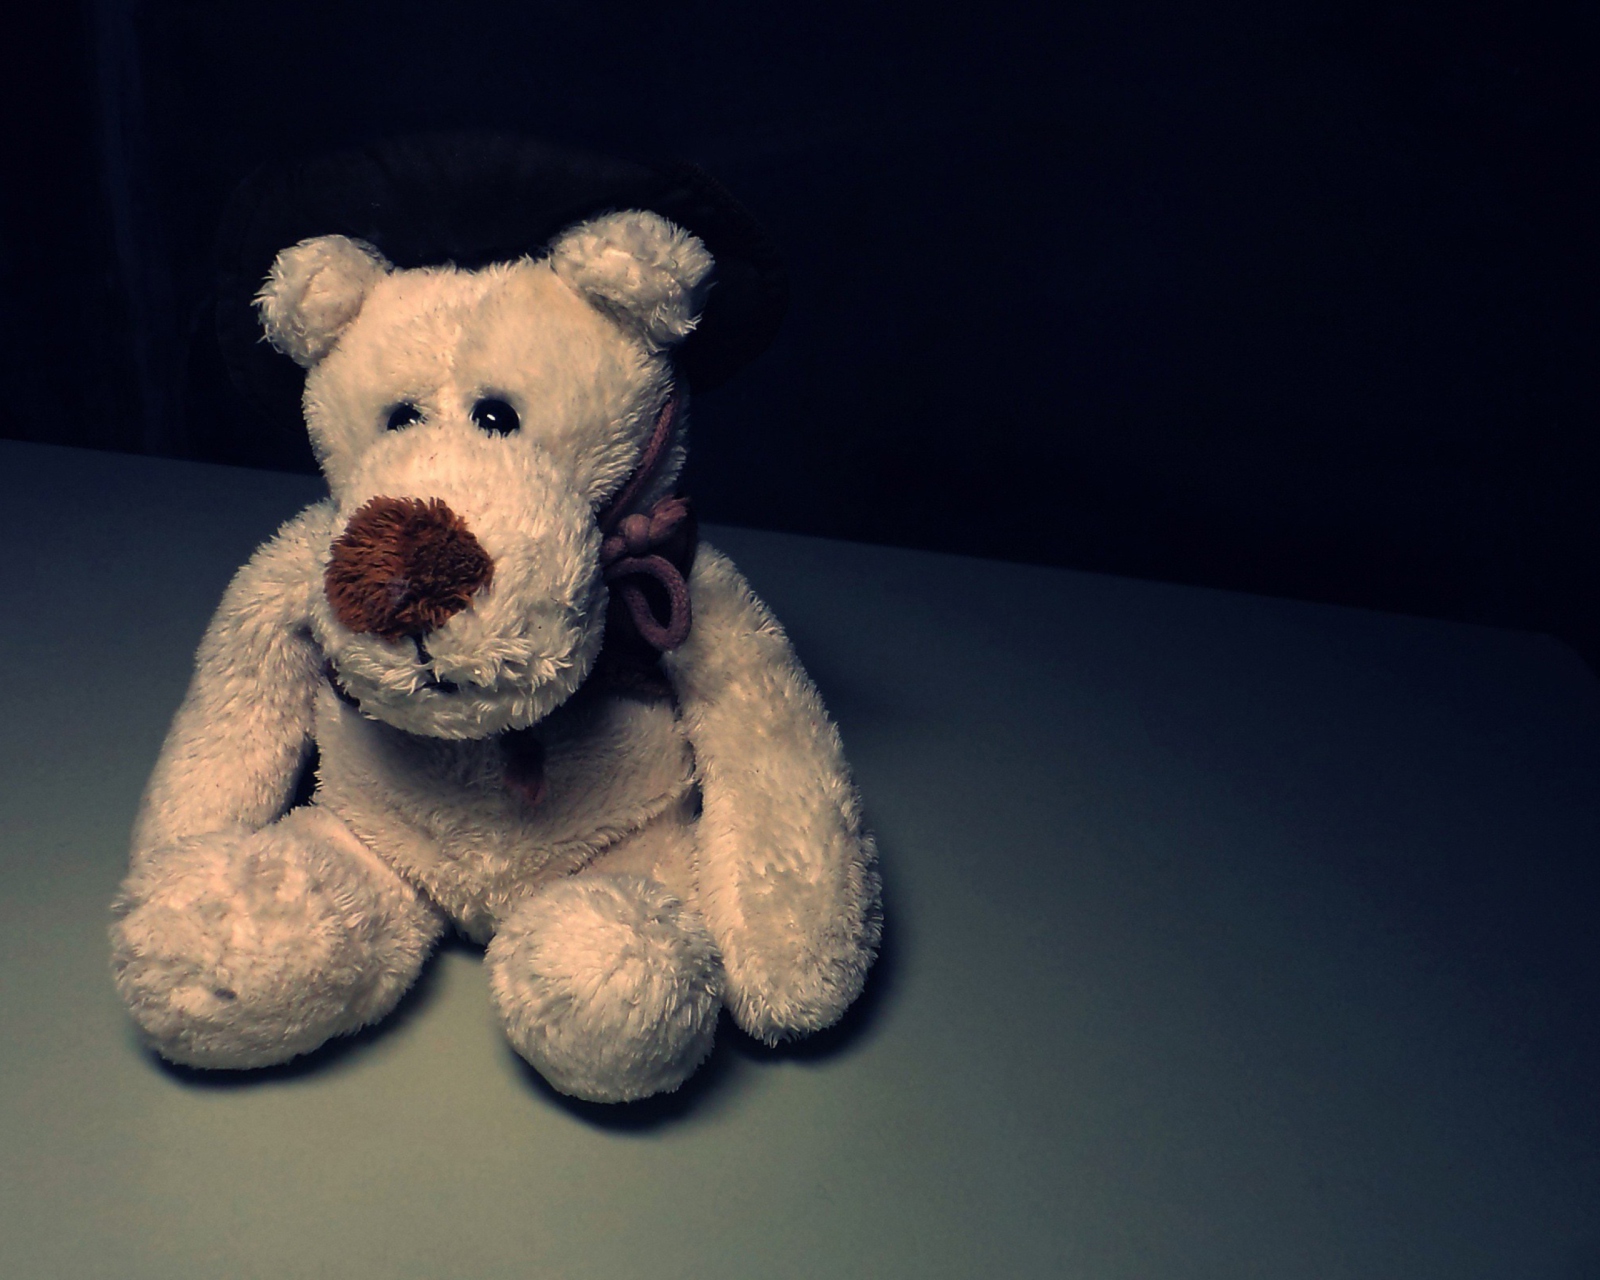 Das Sad Teddy Bear Sitting Alone Wallpaper 1600x1280